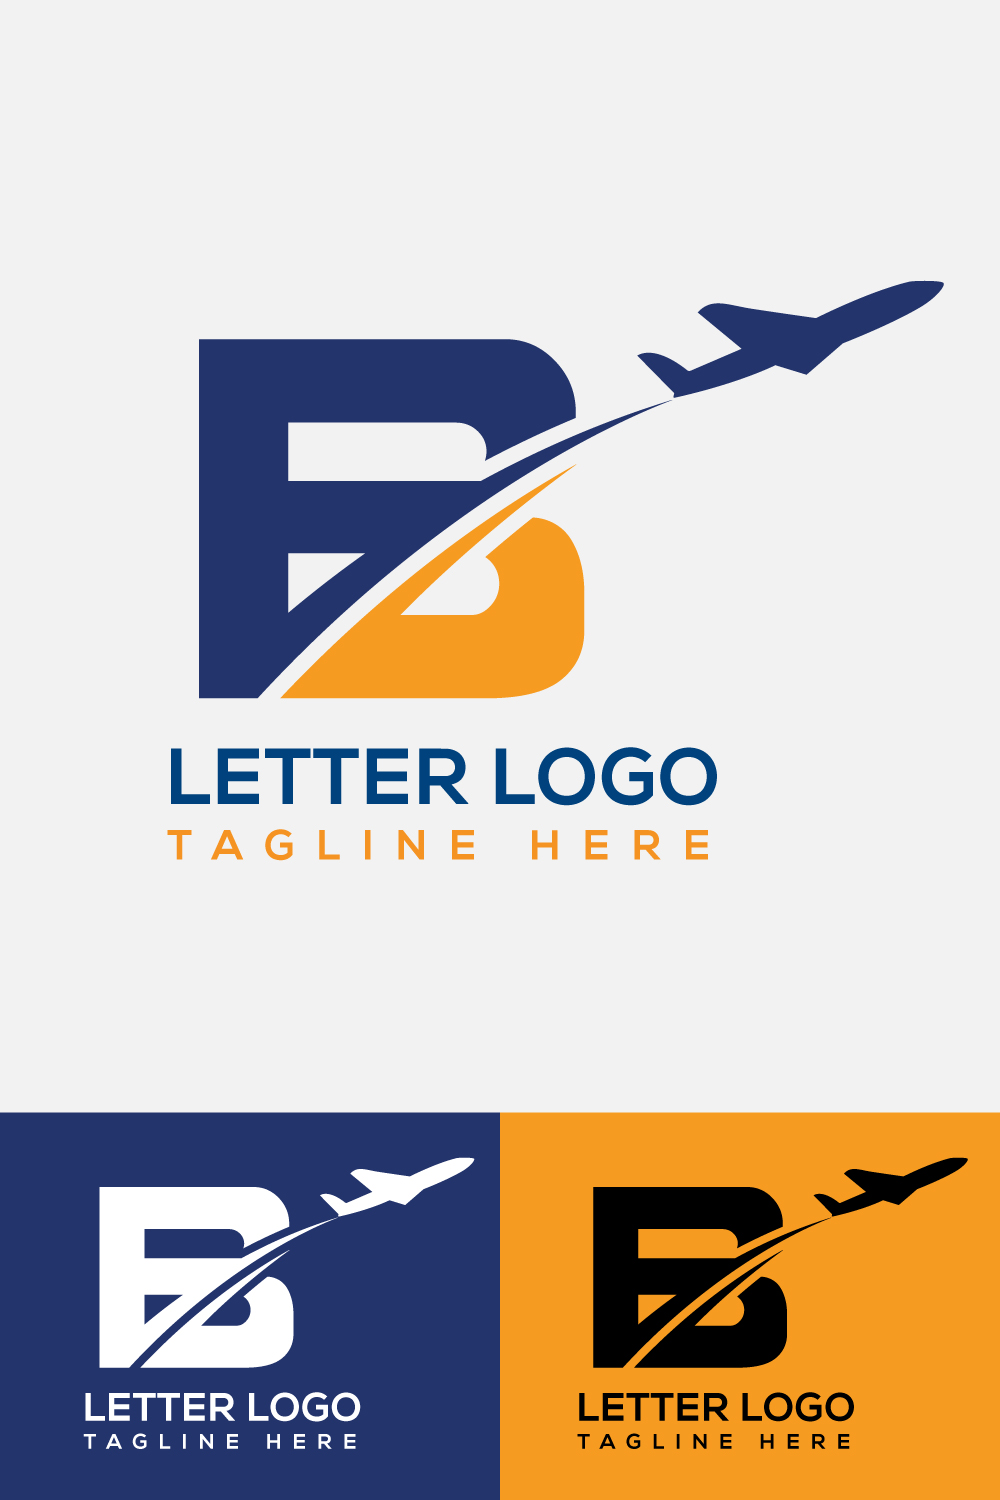 Letter B Airplane Logo Design pinterest image.